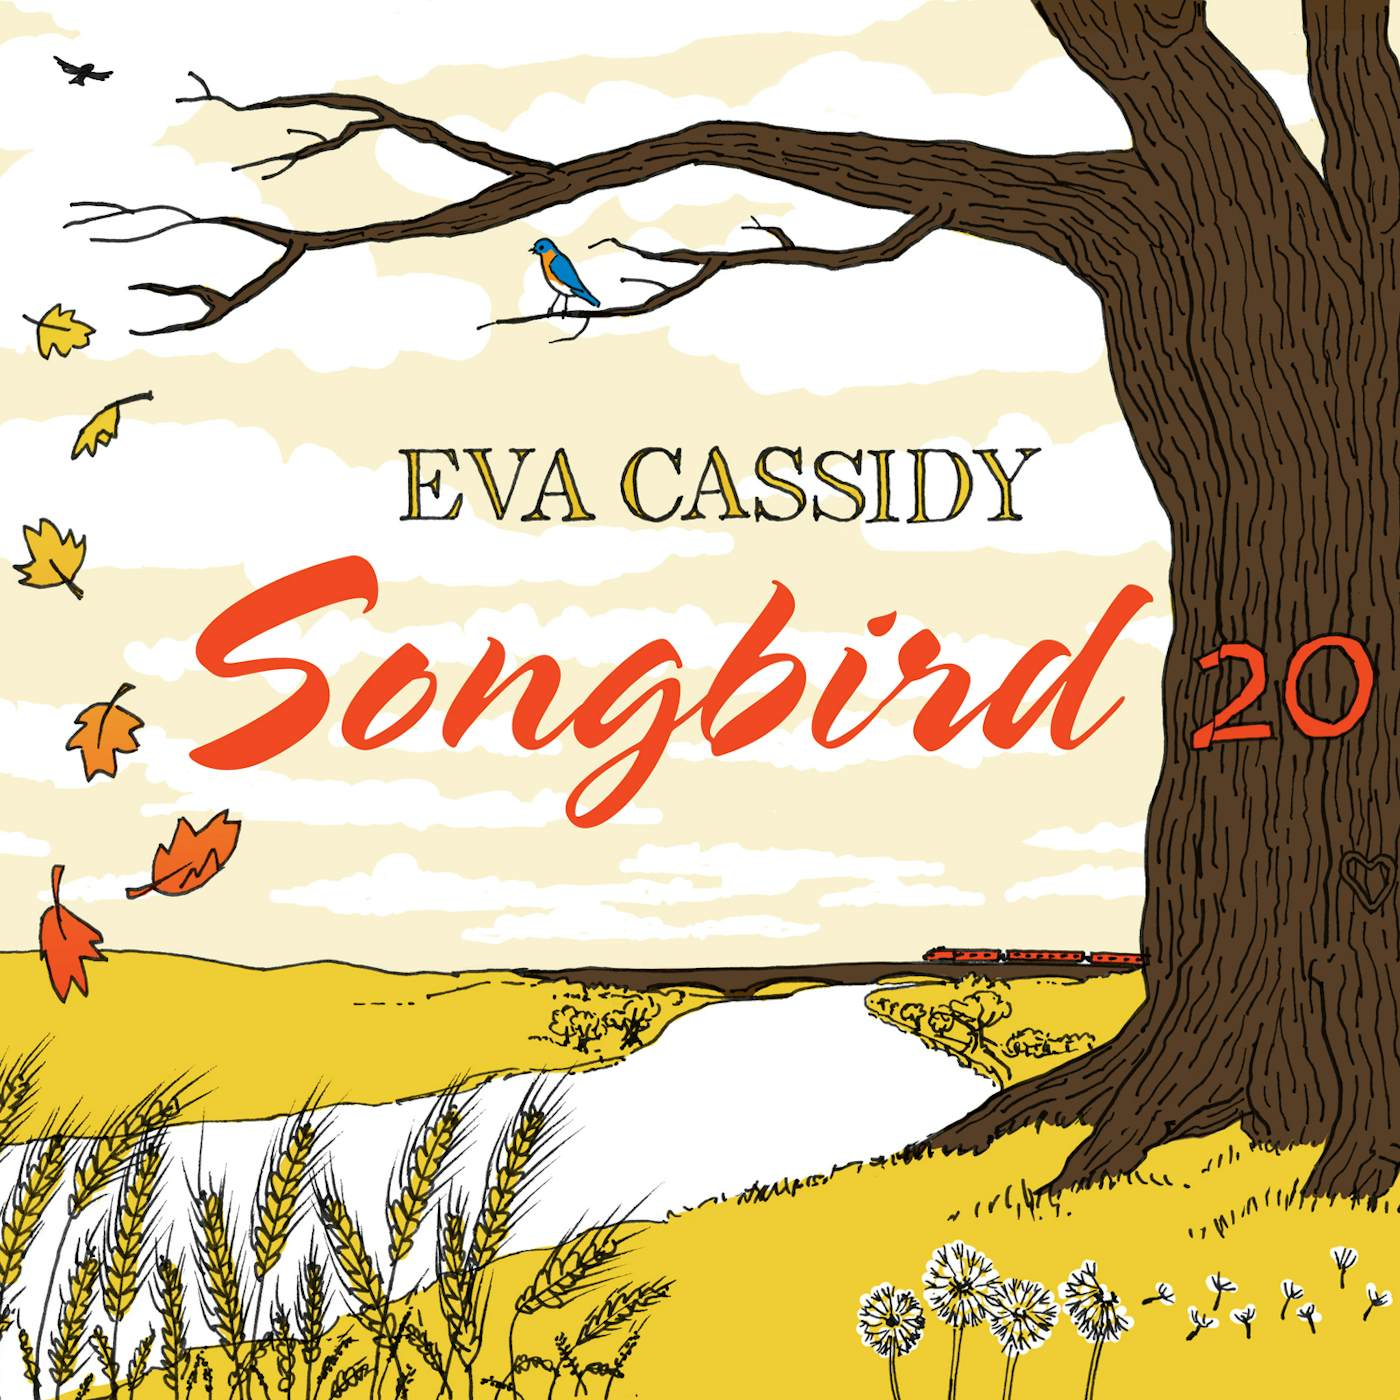 Eva Cassidy SONGBIRD 20 CD